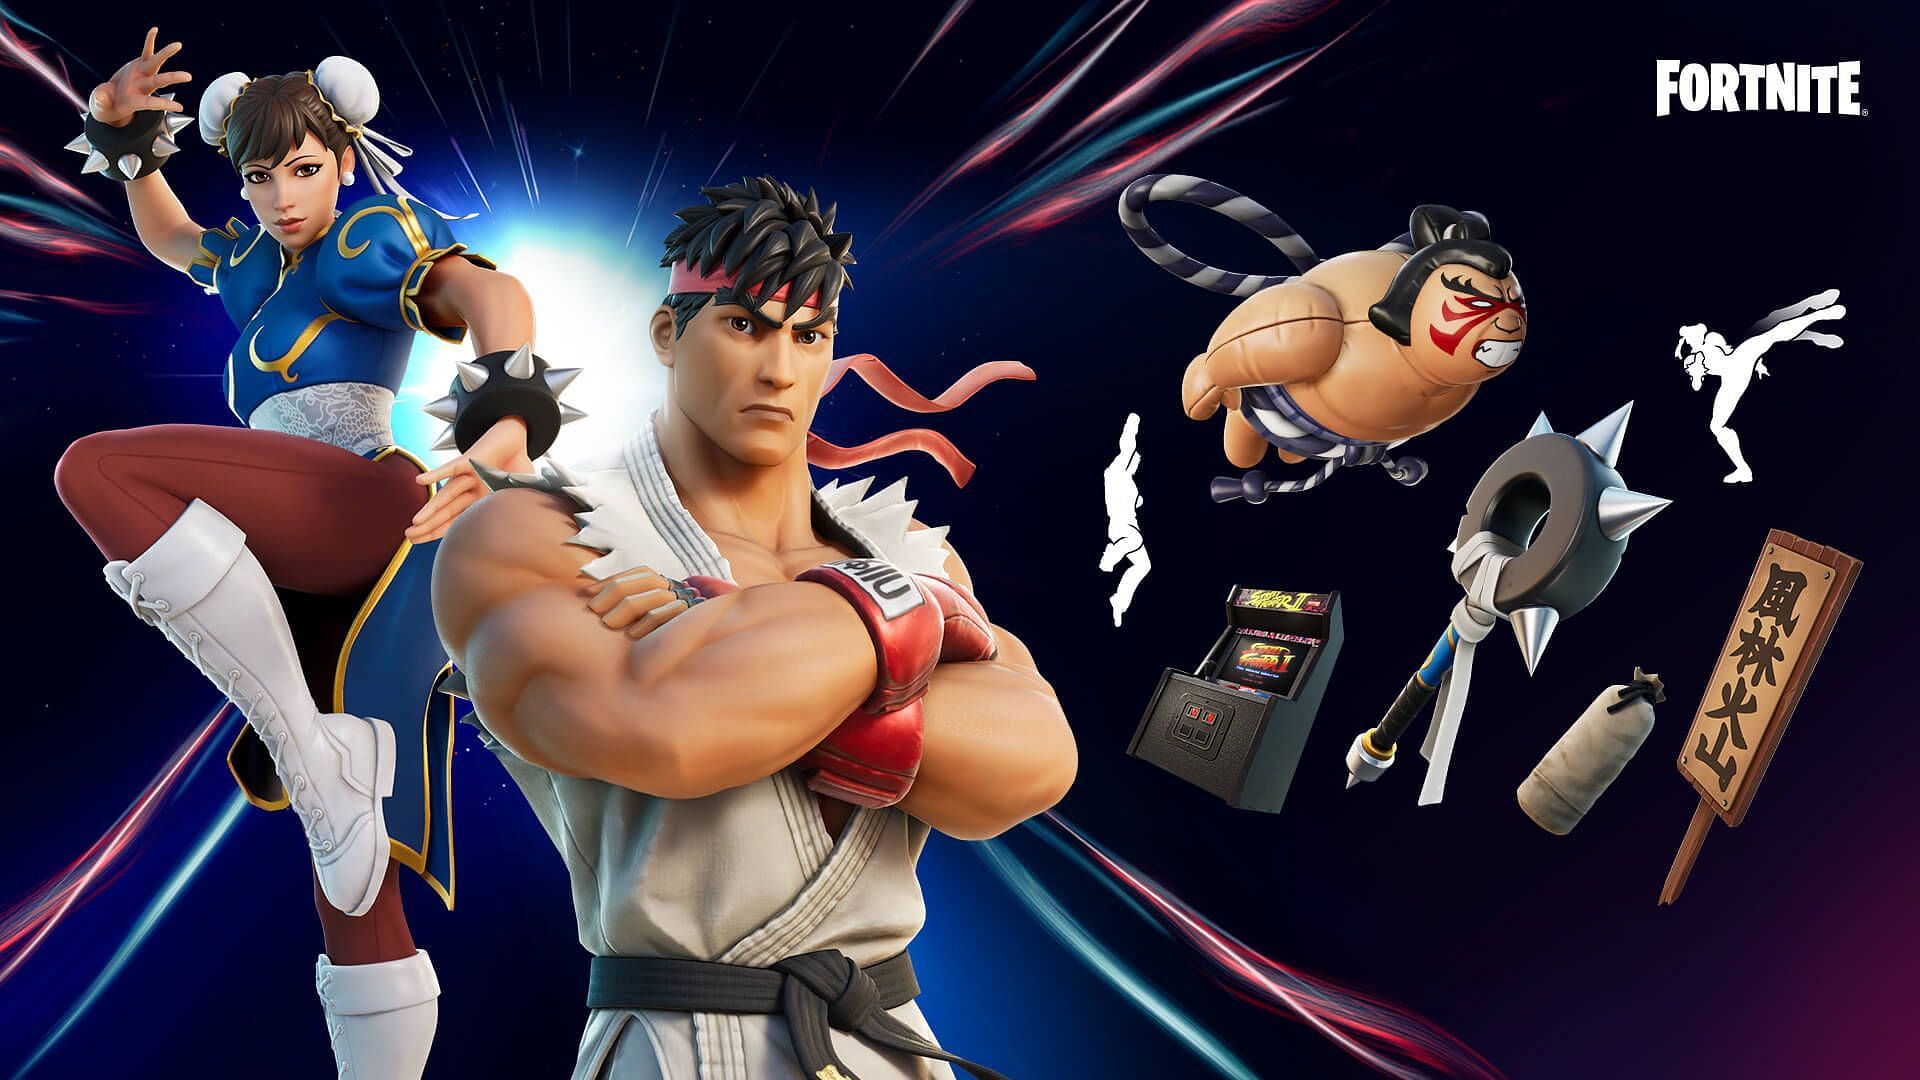 Ryu and Chun-Li Fortnite Collaboration (Image via Epic Games)